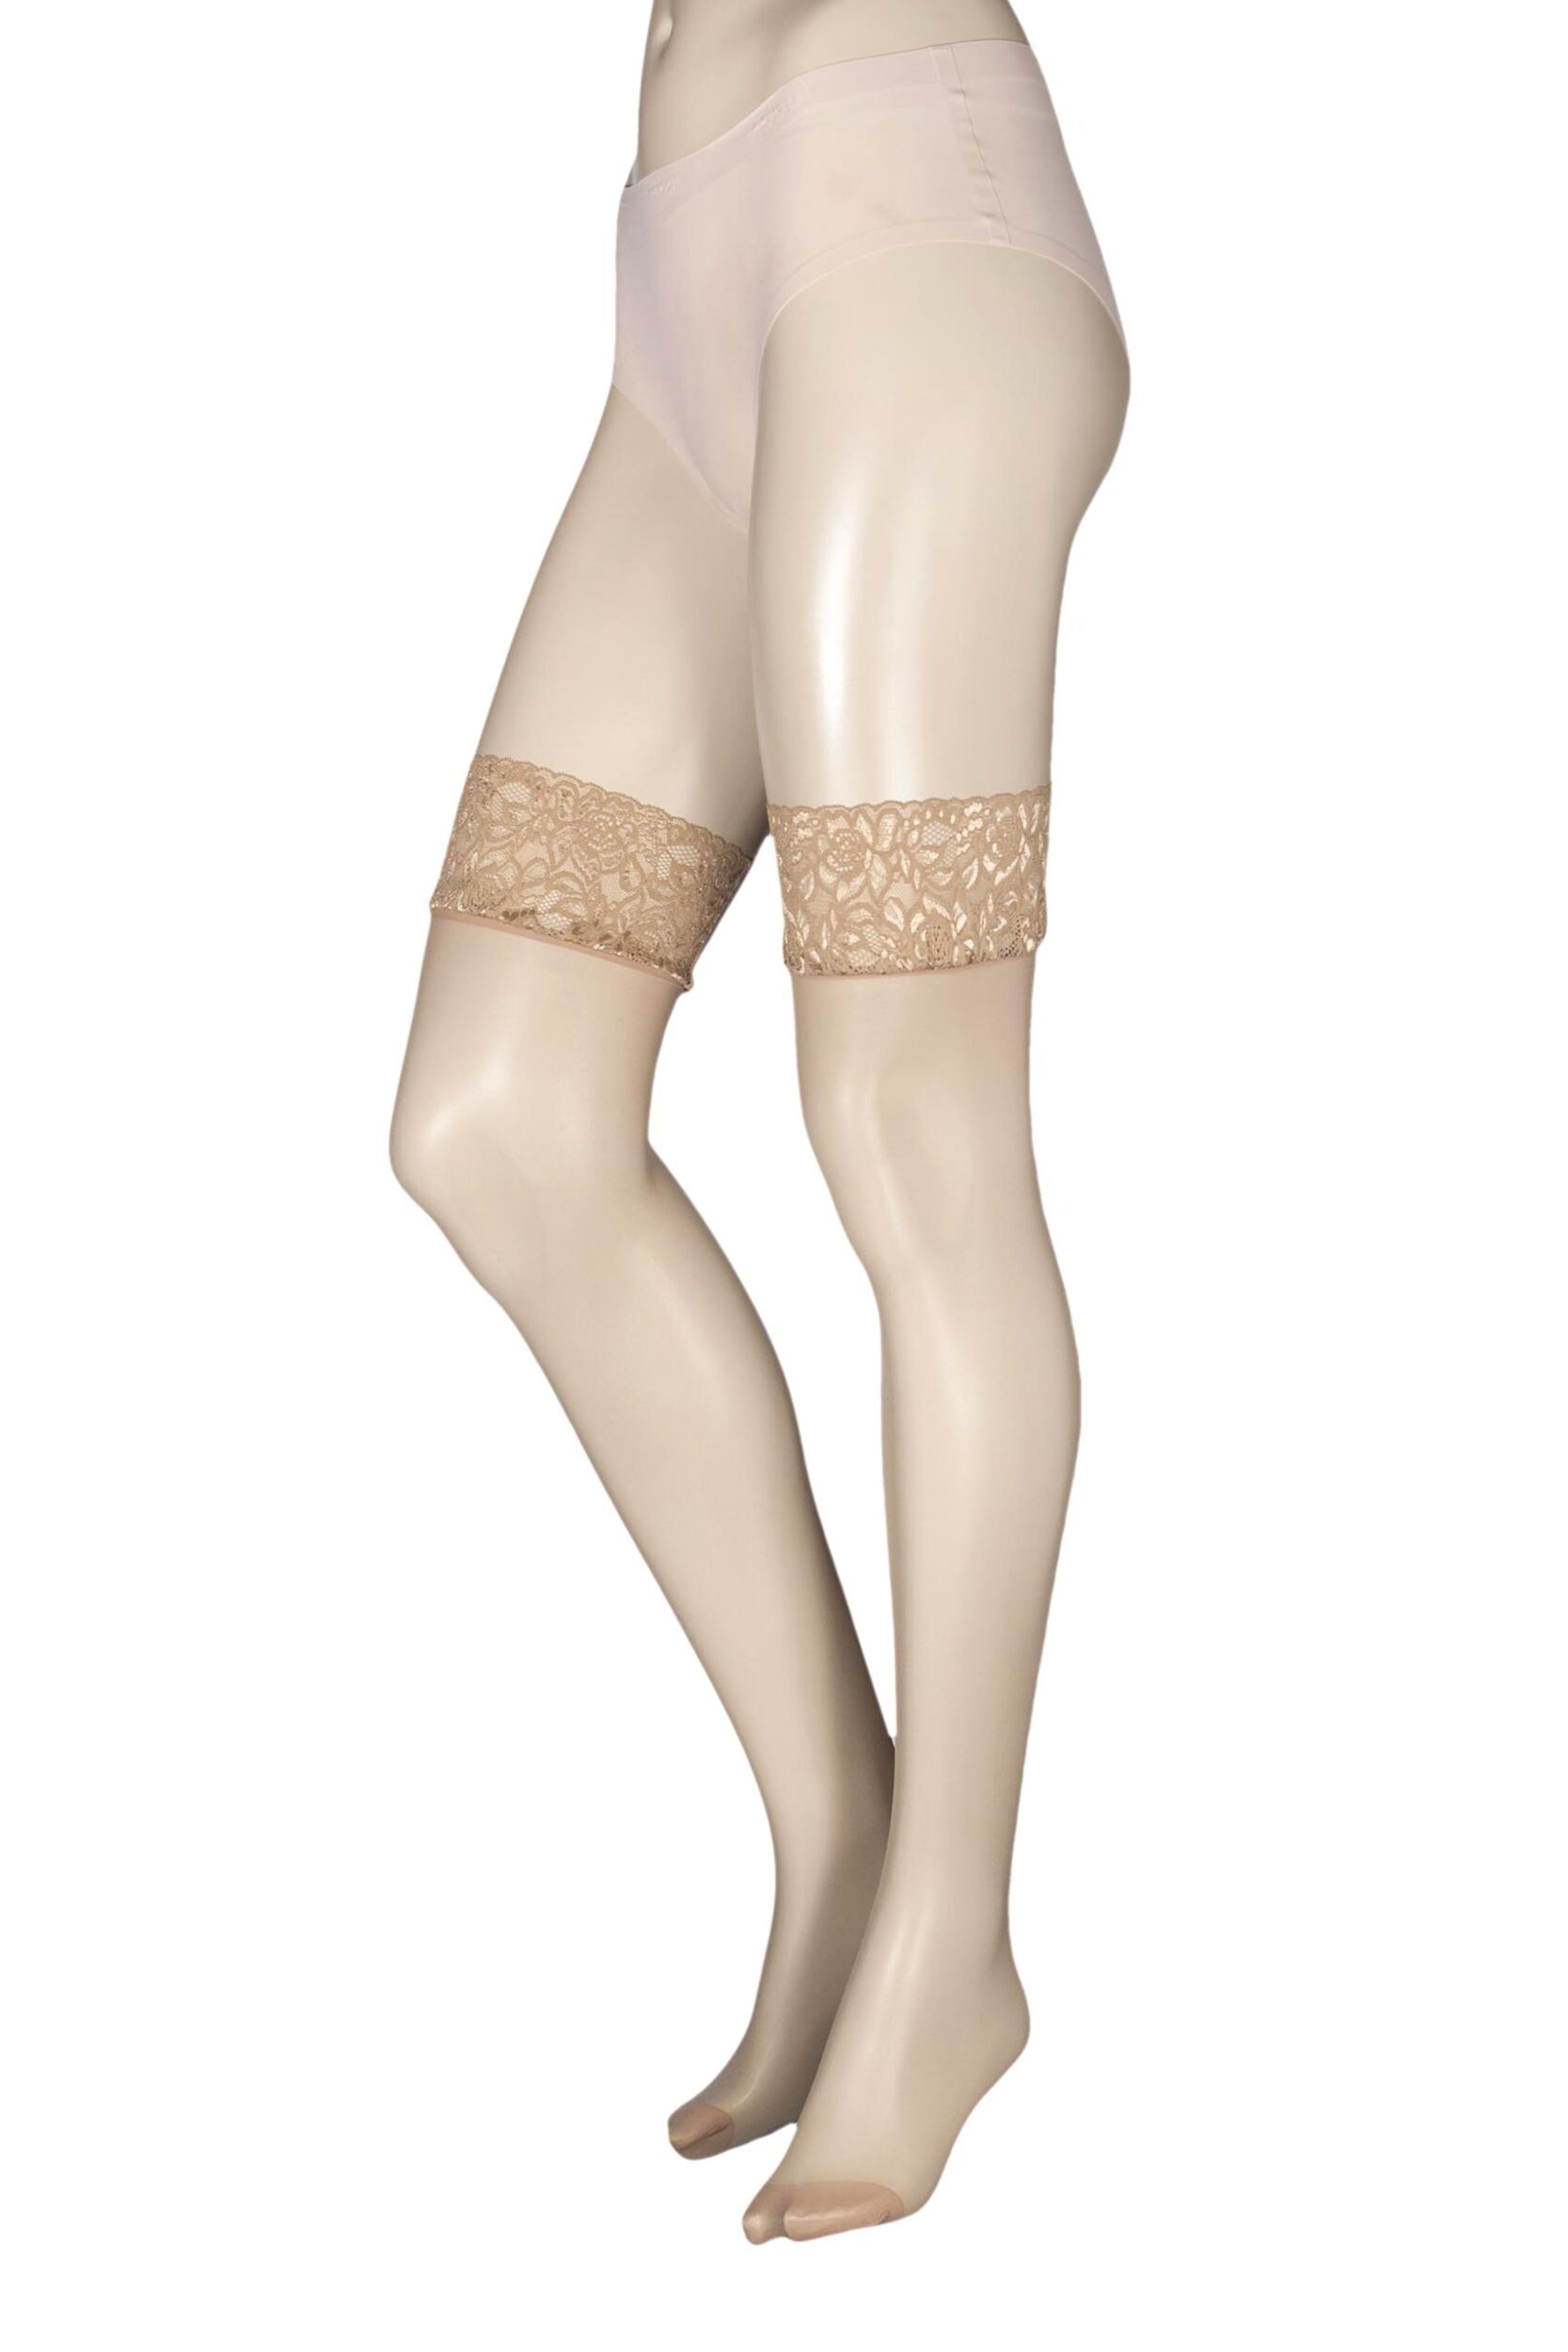 1 pair natural tan 10 denier run resist lace top stockings ladies medium - charnos